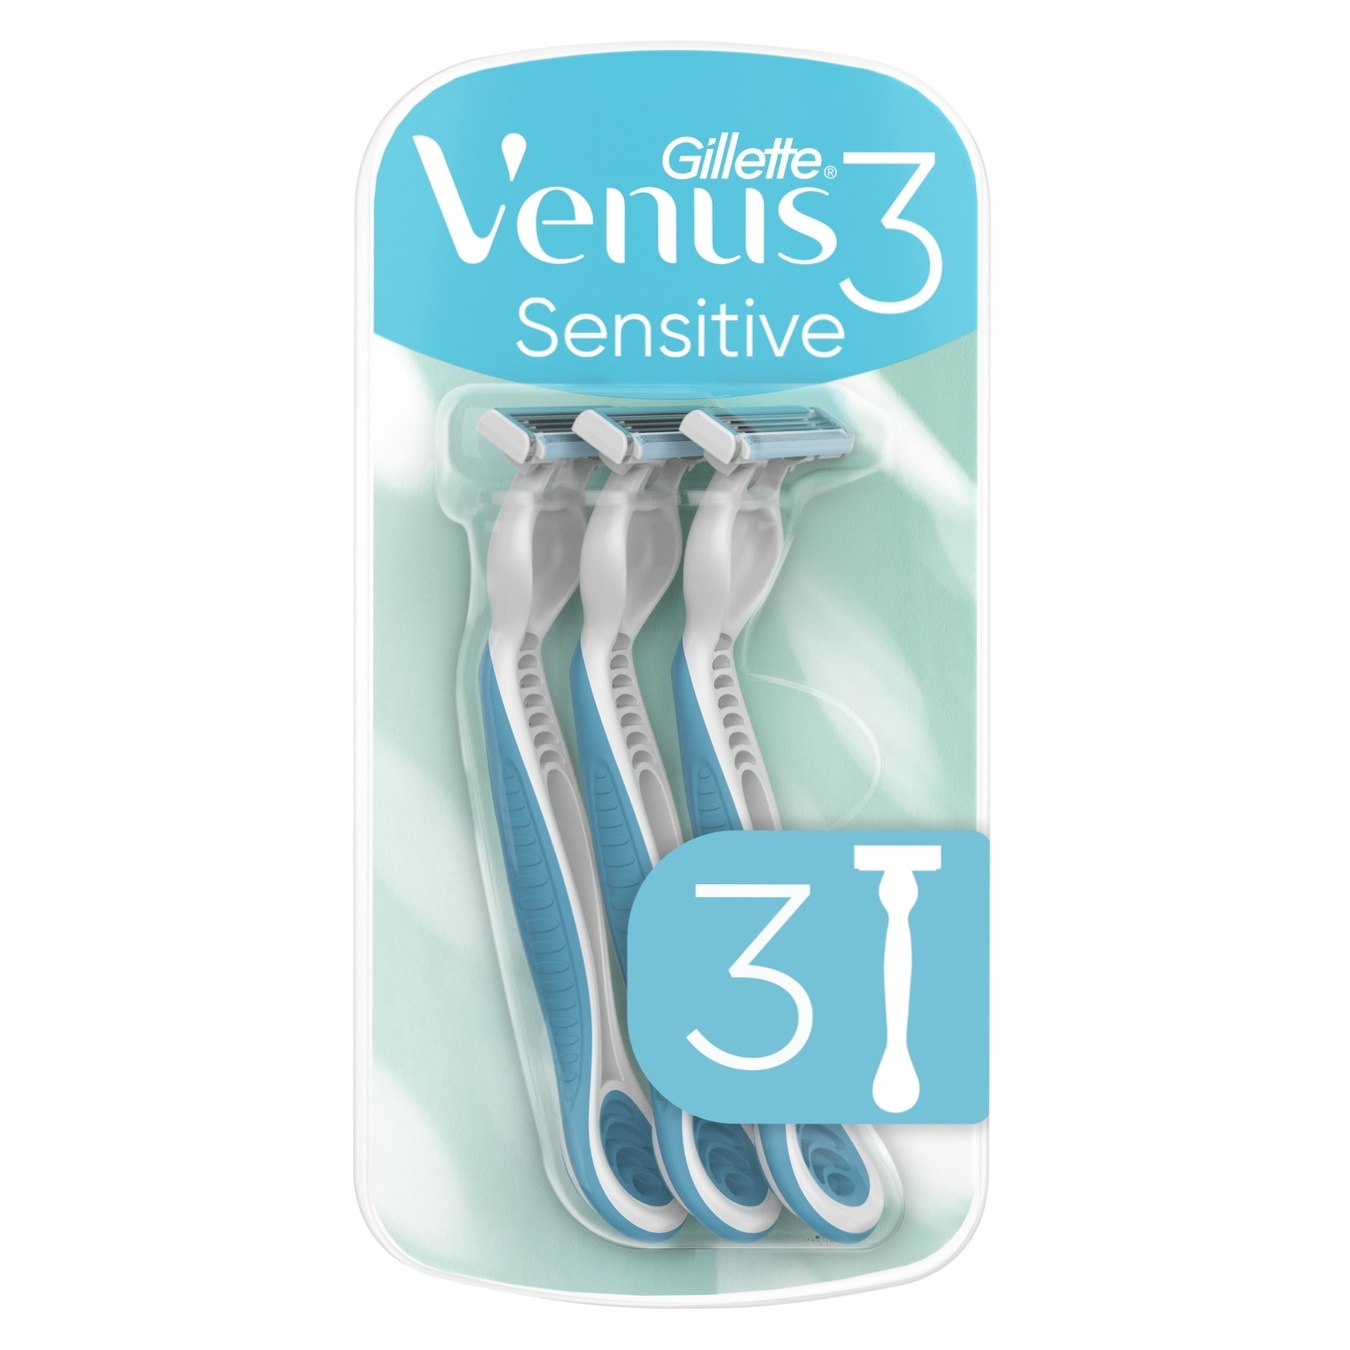 Бритвы одноразовые Gillette Venus 3 Sensitive для женщин 3шт